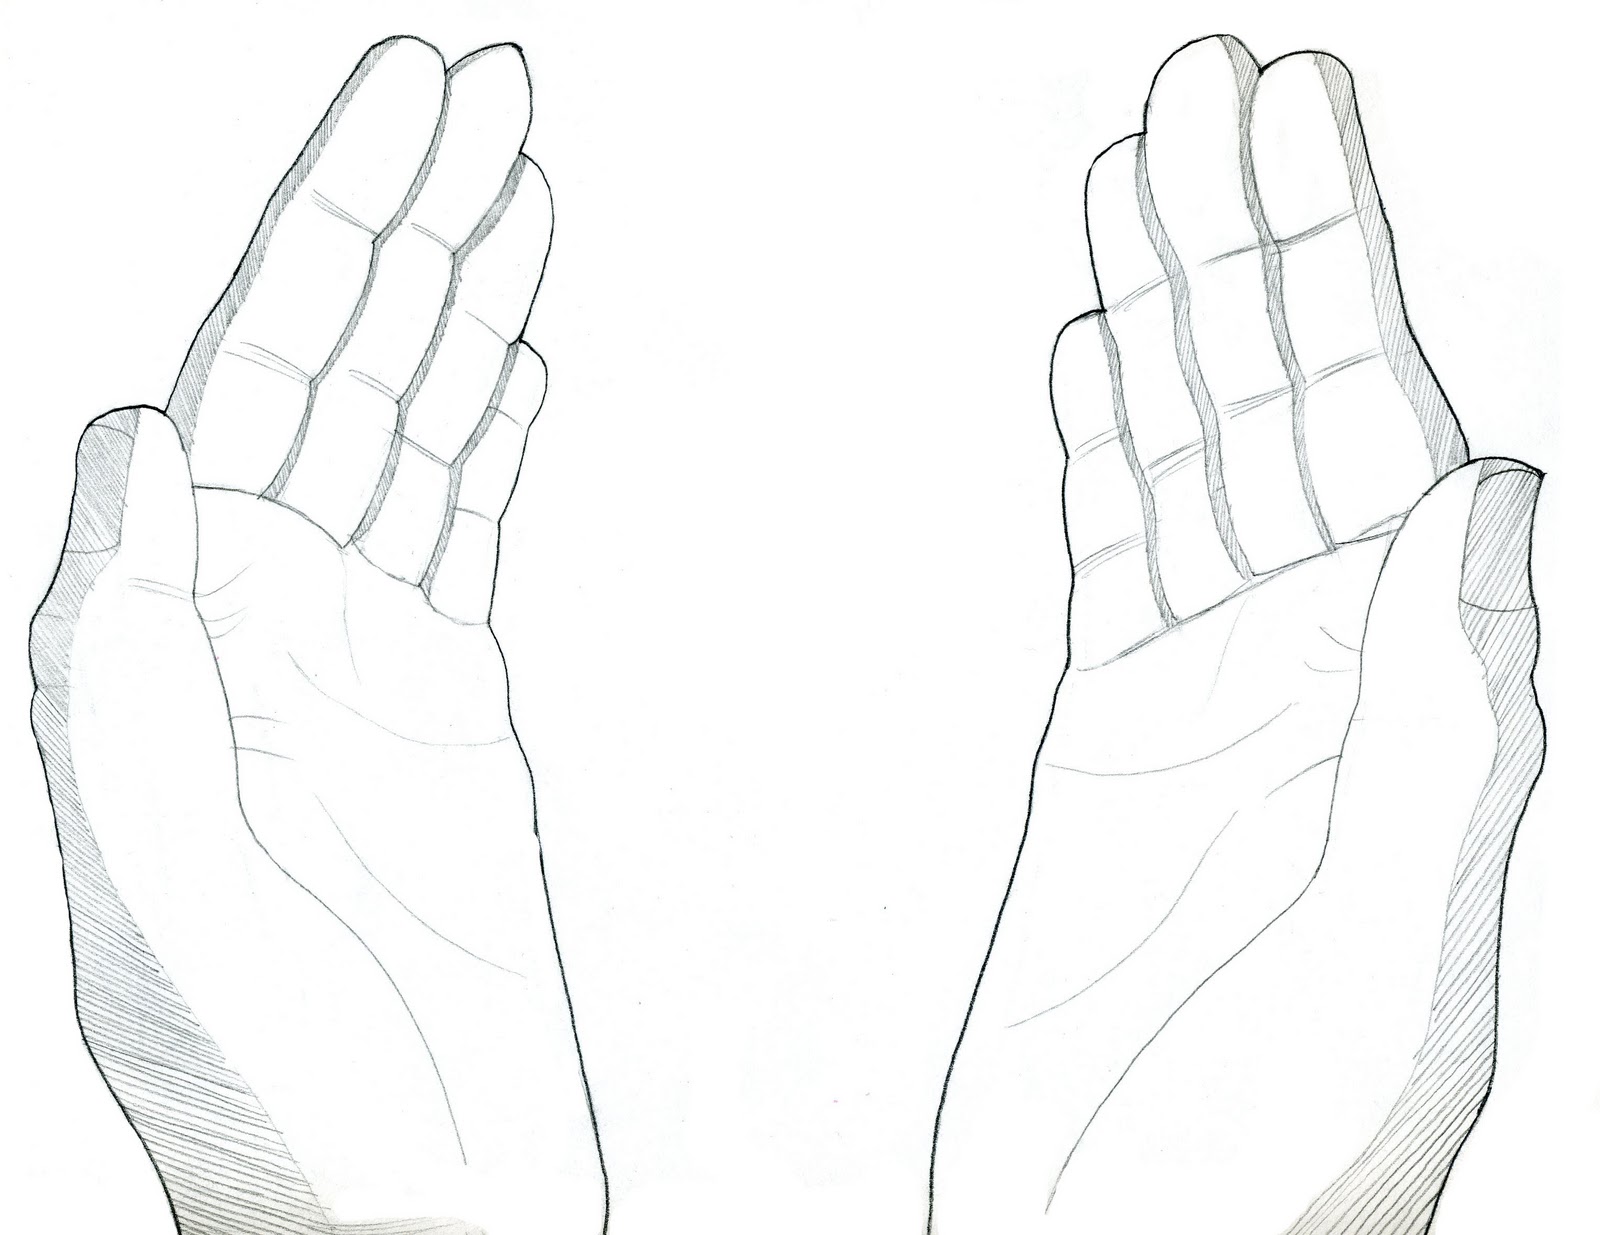 open giving hands sketch